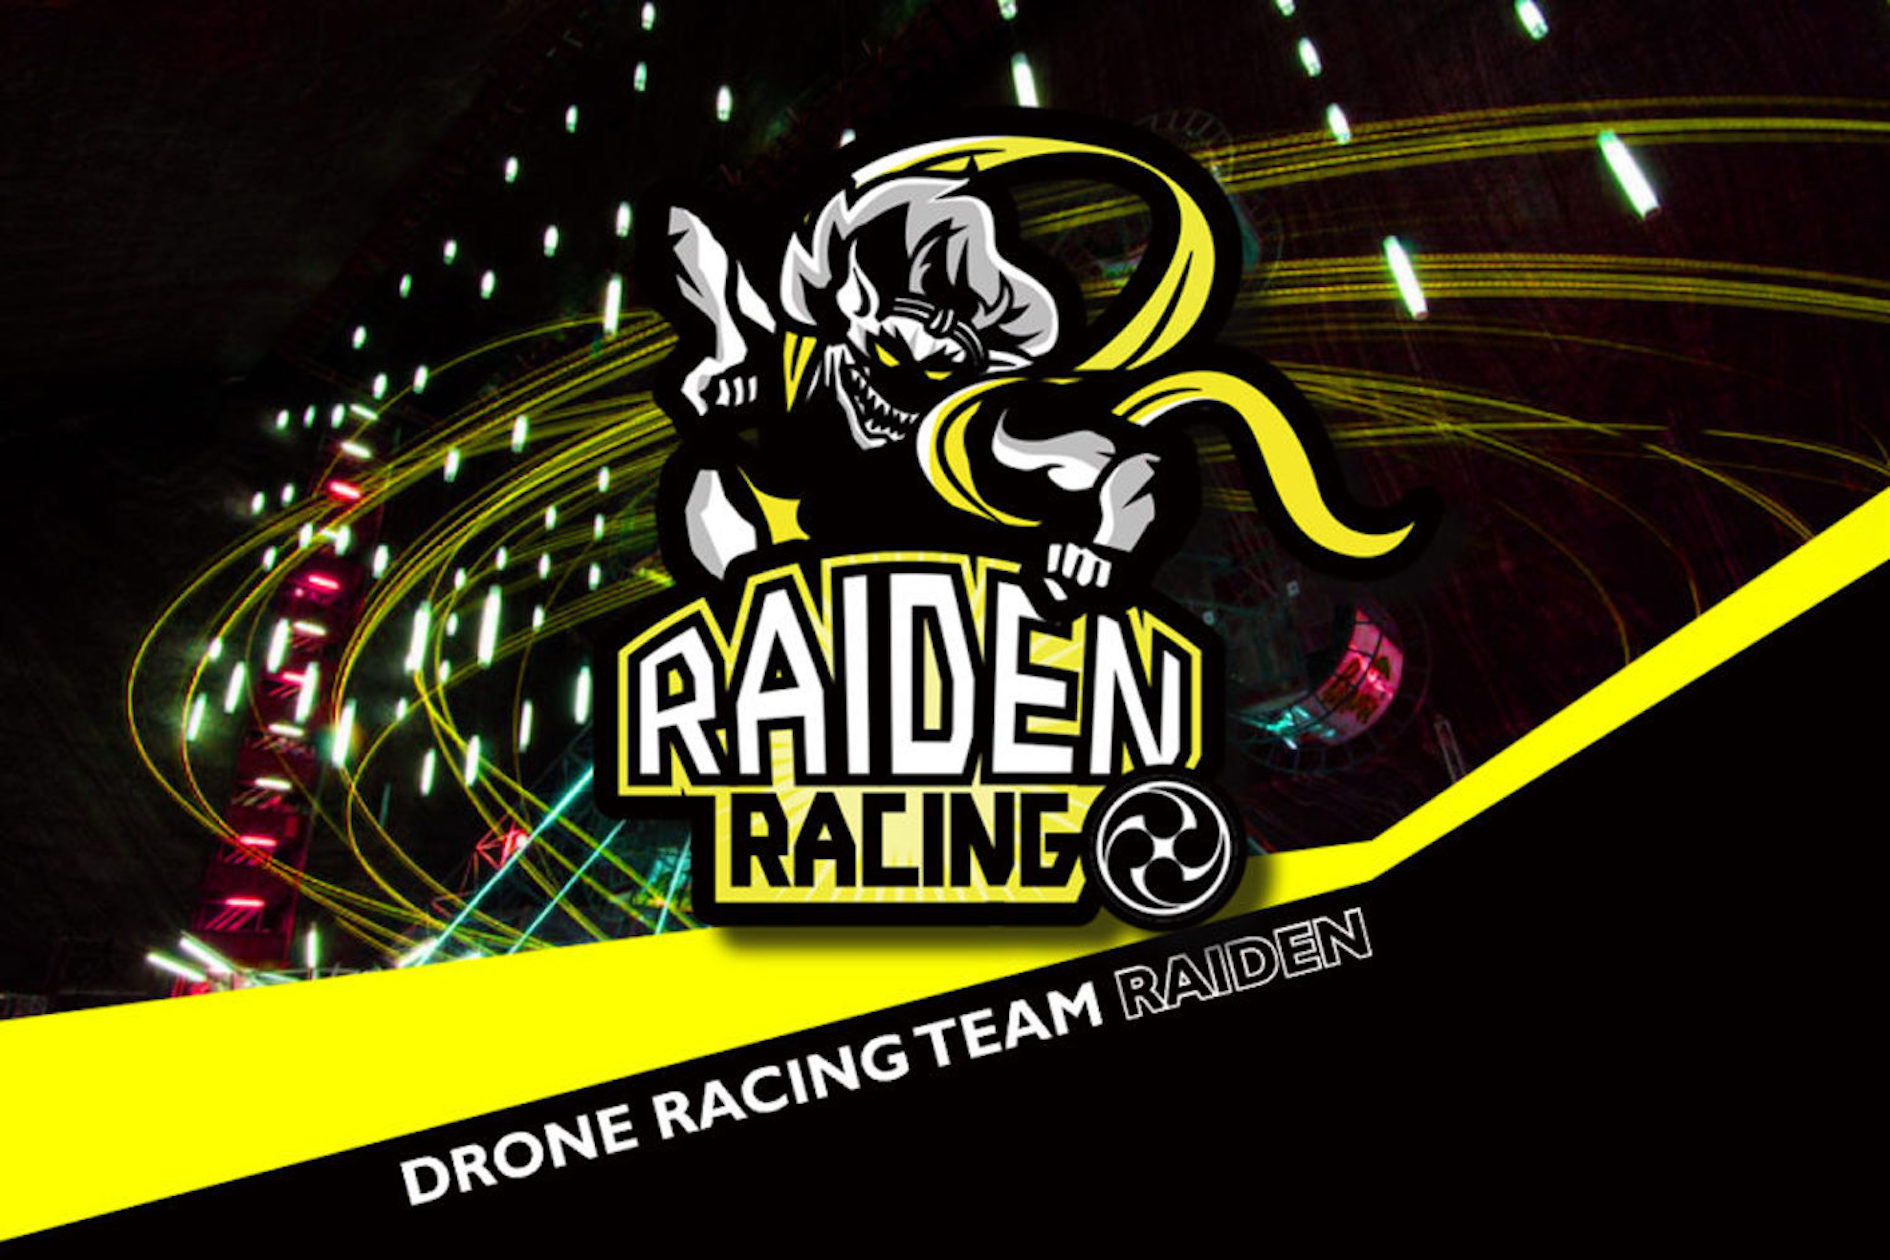 RAIDEN RACING、中国プロフェッショナルドローンレースリーグ『X-FLY』2018年シーズン参戦を正式に決定！世界遺産『万里の長城』を舞台にいよいよリーグ開幕！